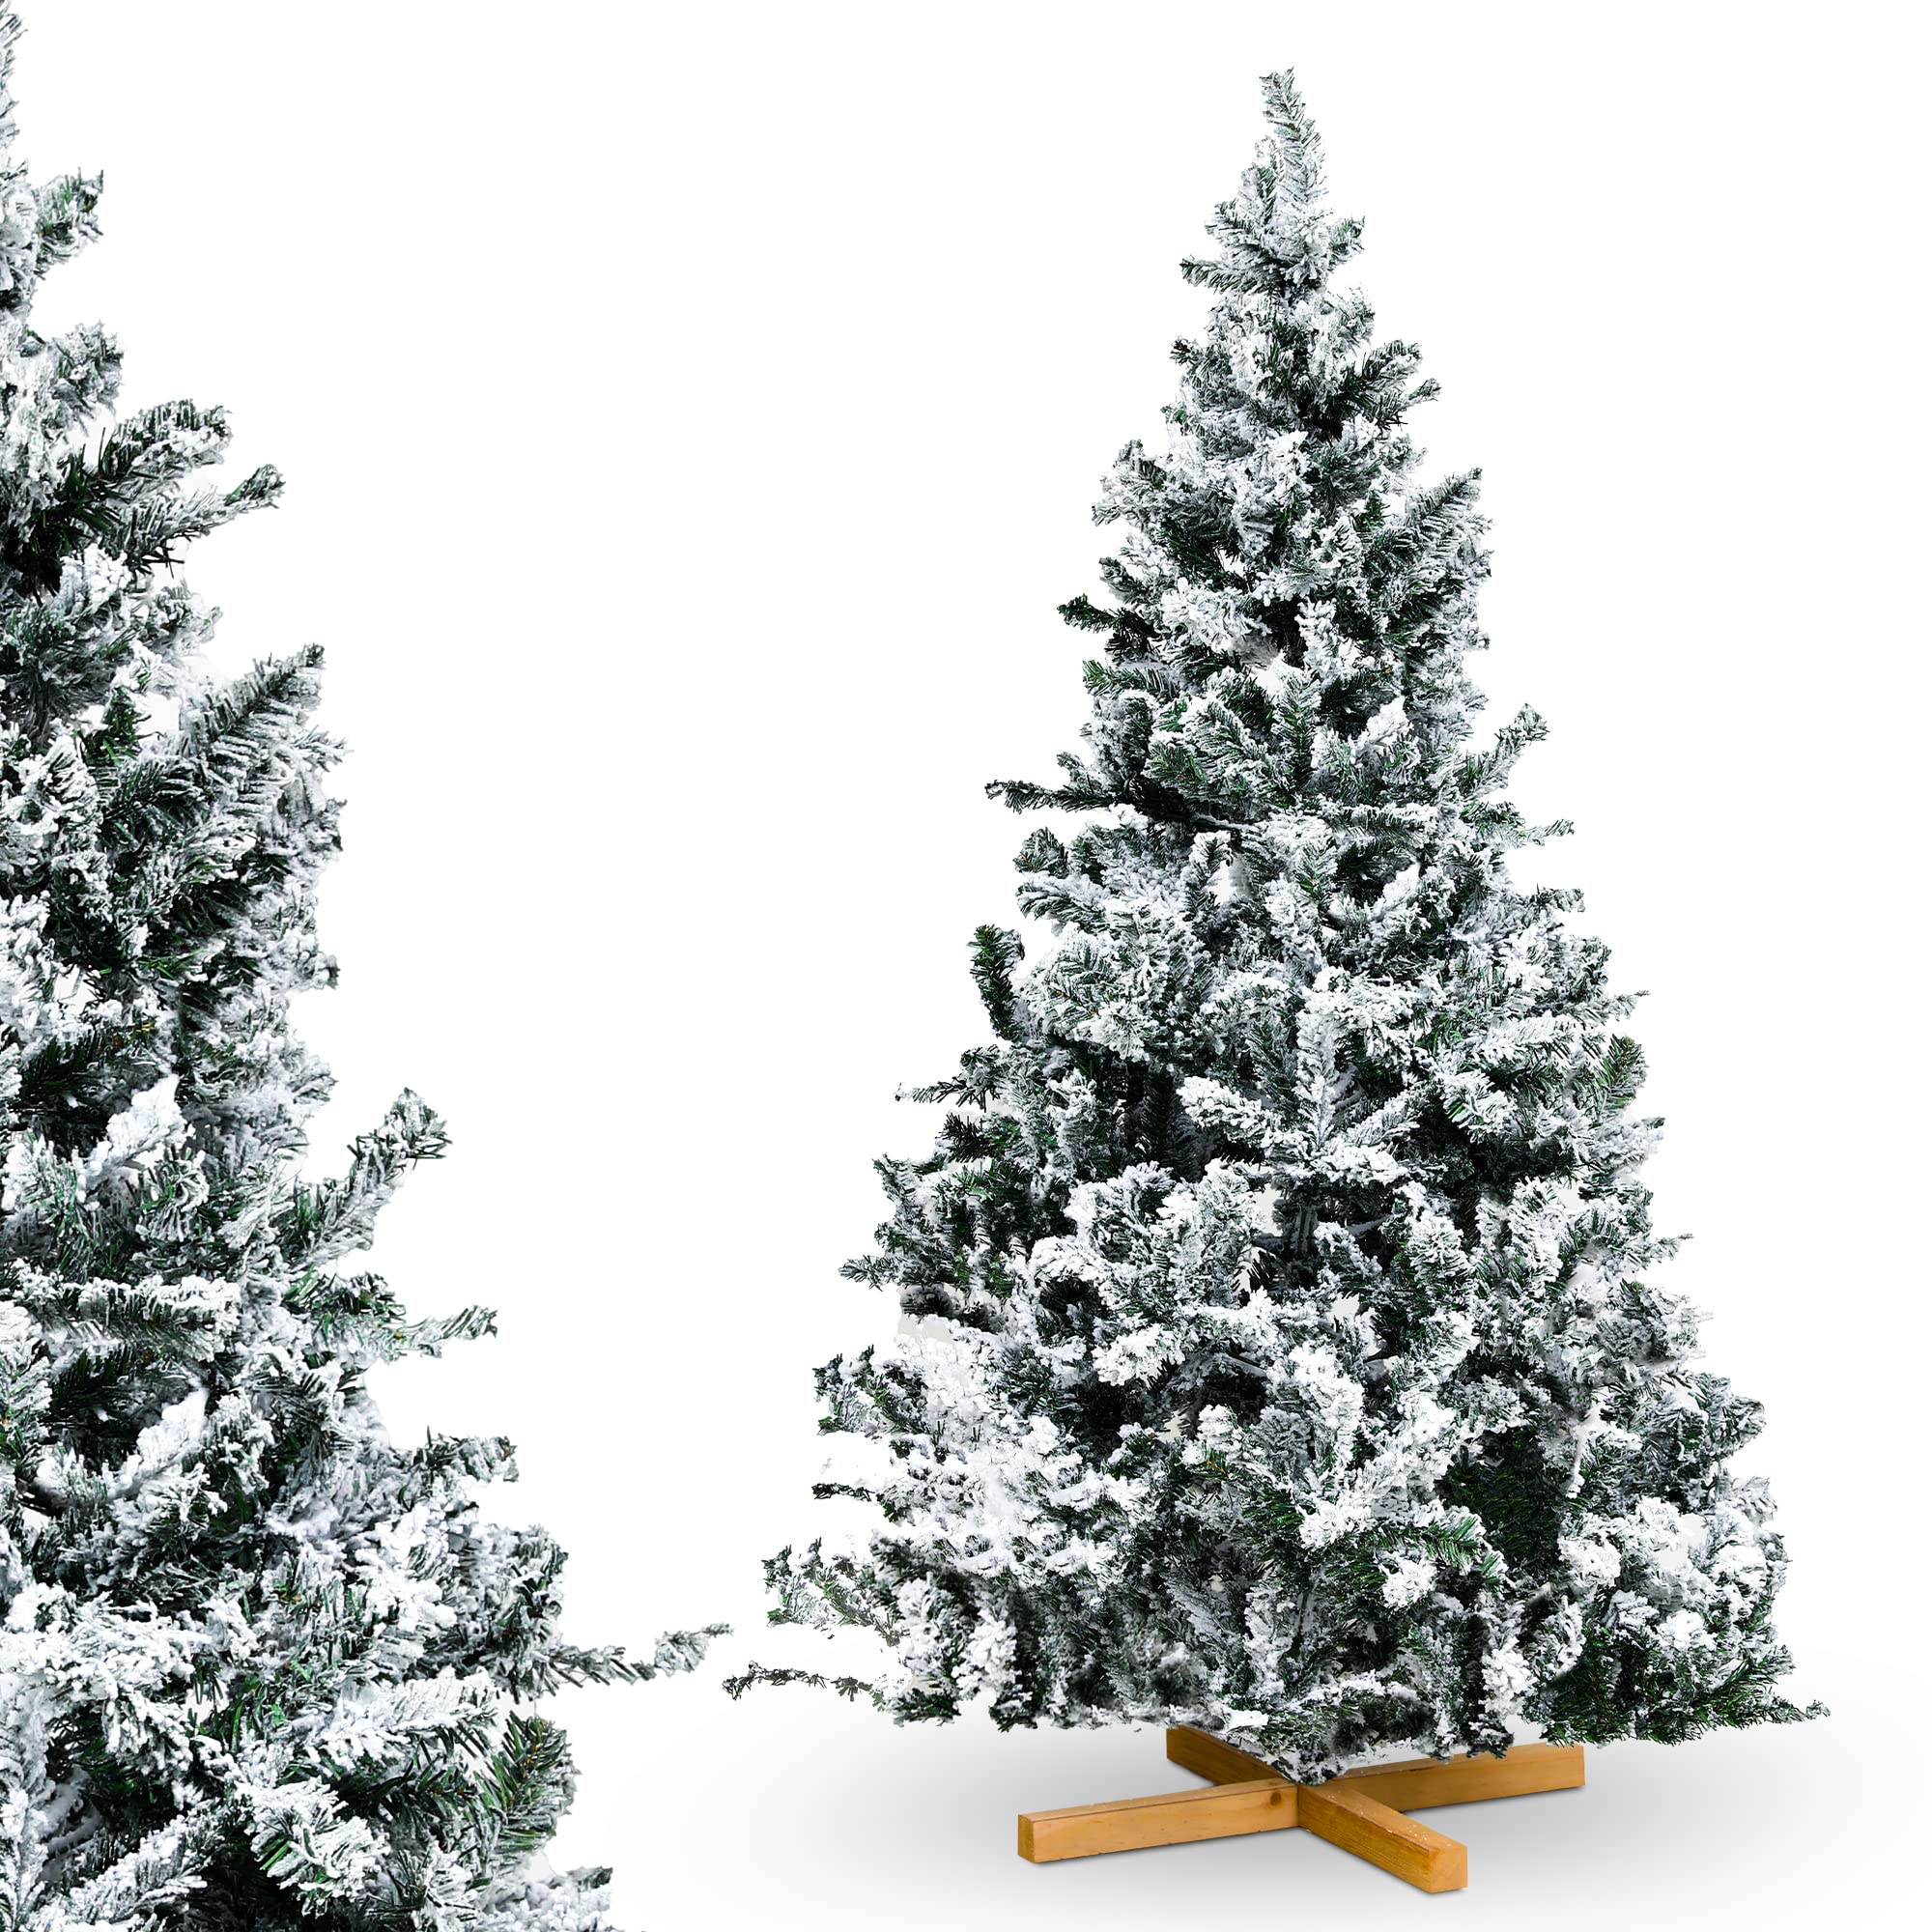 Urhome Künstlicher Weihnachtsbaum mit Ständer beschneite Tanne - 120 cm hoher Christbaum Dekobaum PVC Kunstbaum Tannenbaum mit Schnee Schnellaufbau Klappsystem Baum für Weihnachten